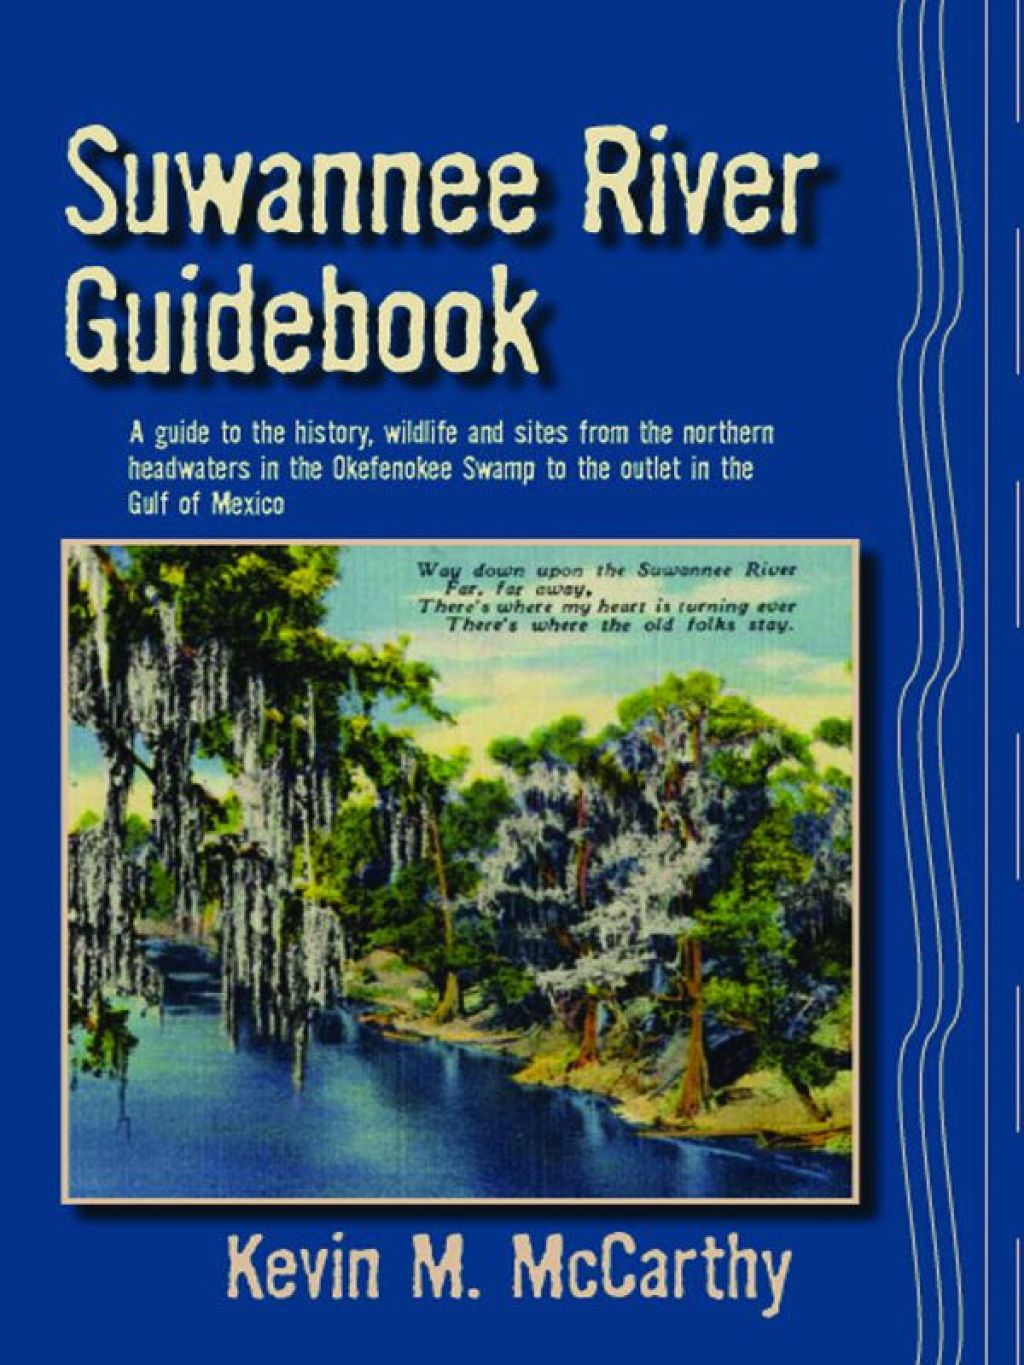 Suwannee River Guidebook (eBook Rental) - Kevin M. McCarthy,